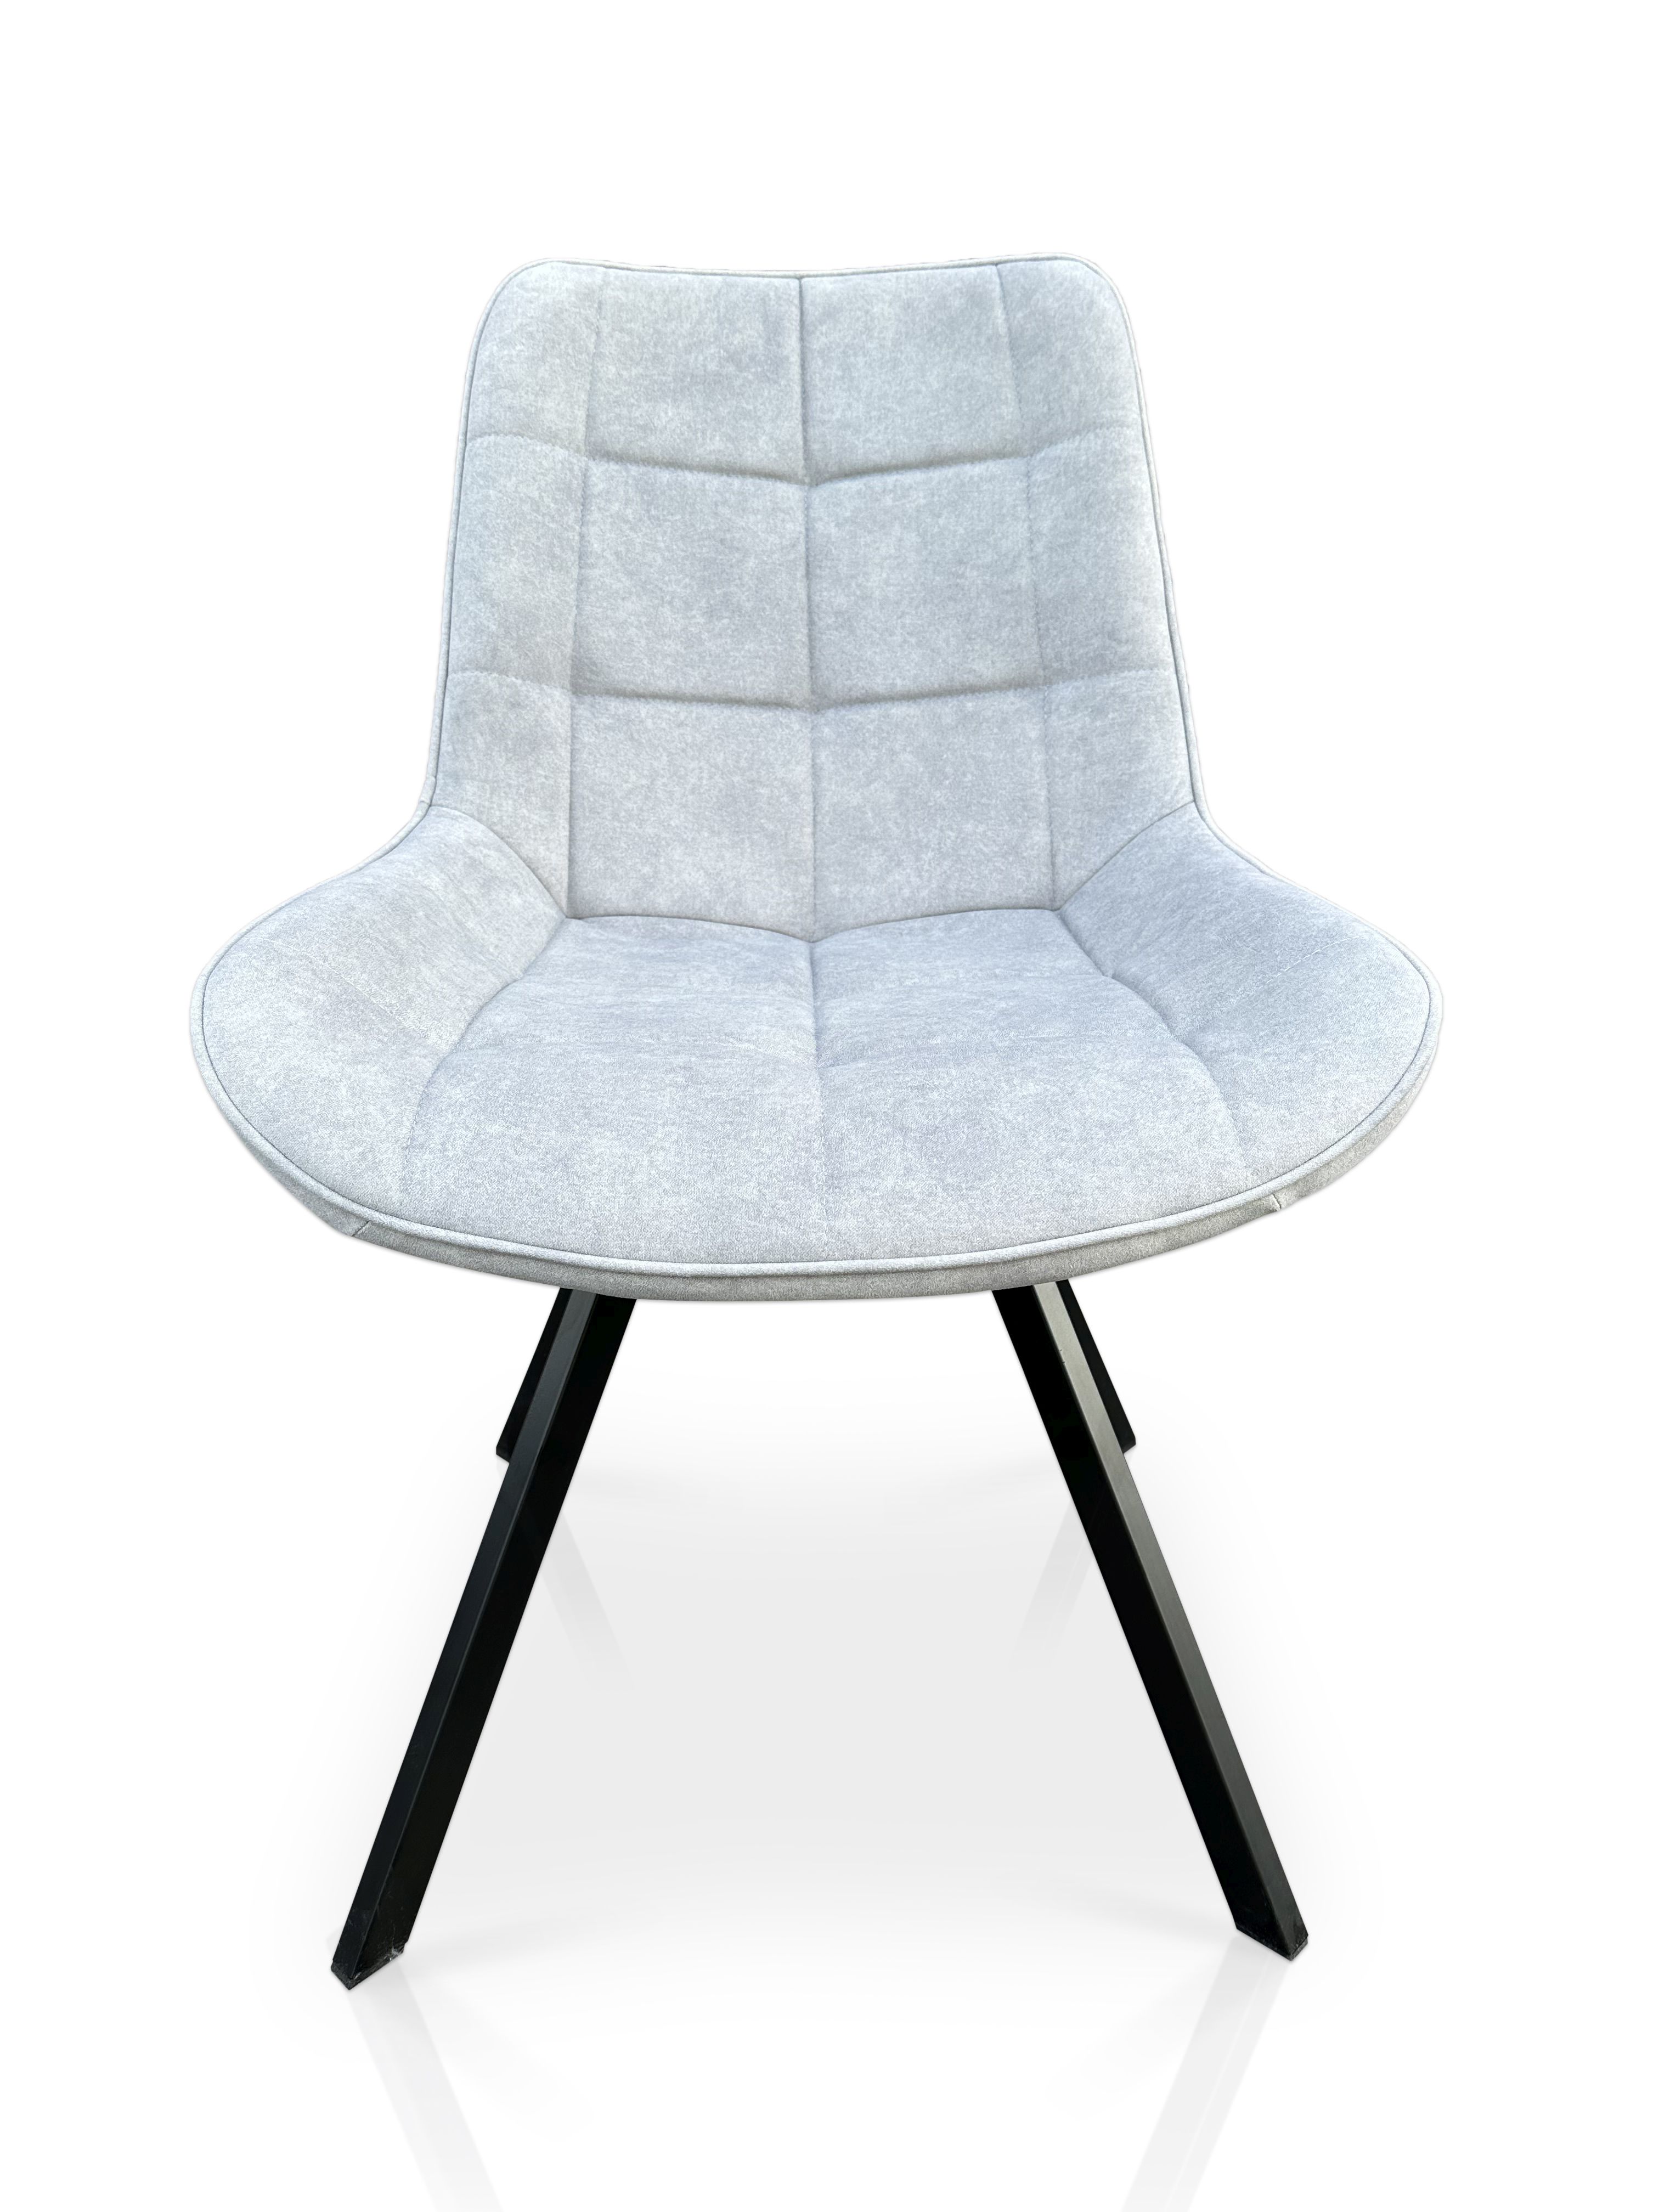 Krzesło Lapo 21137 obrotowe 360 st Kwadrat w stylu loftowym Cloud 81